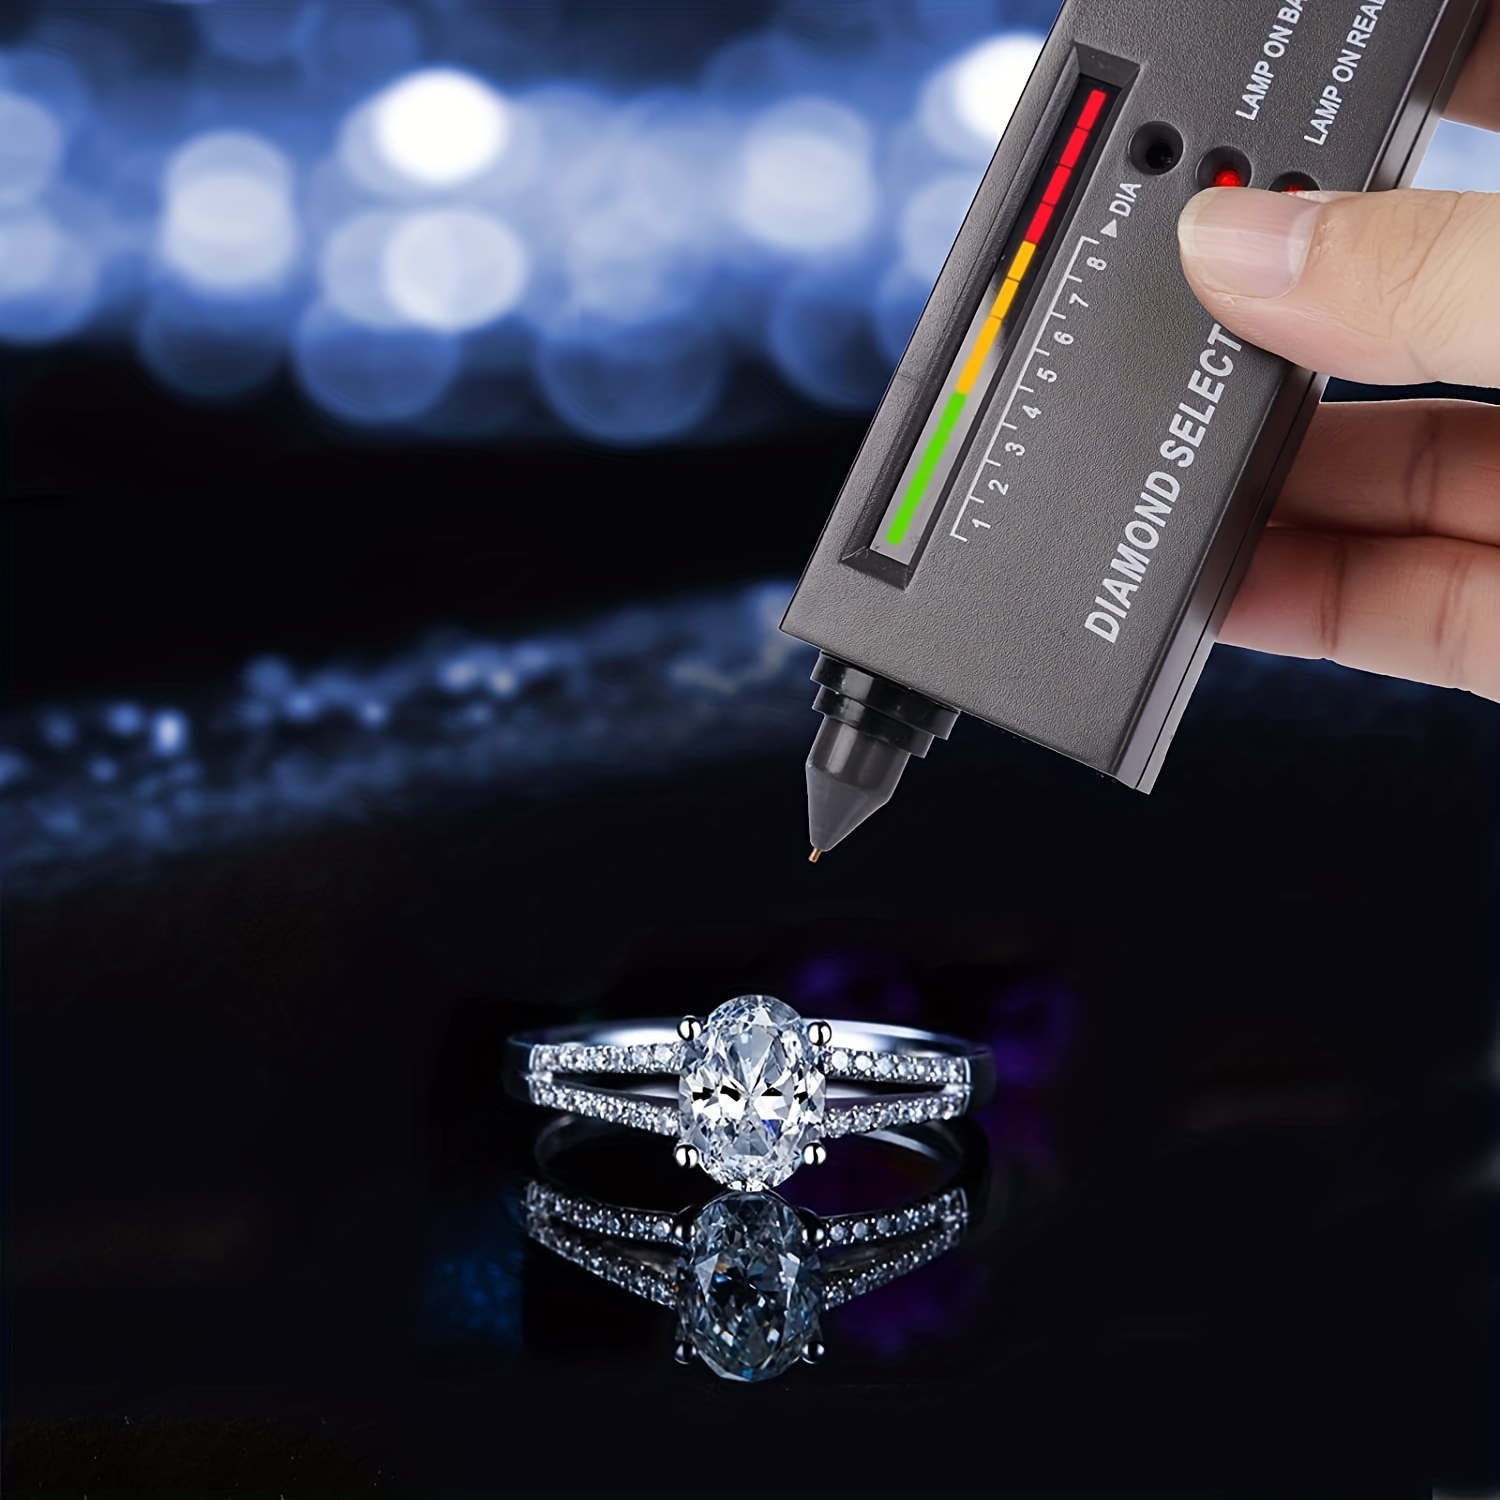 Professional Diamond Tester, Gem Tester Pen Strumento Portatile Elettronico  Per Il Test Dei Diamanti Per Gioielli, Giada, Rubino E Pietre Preziose